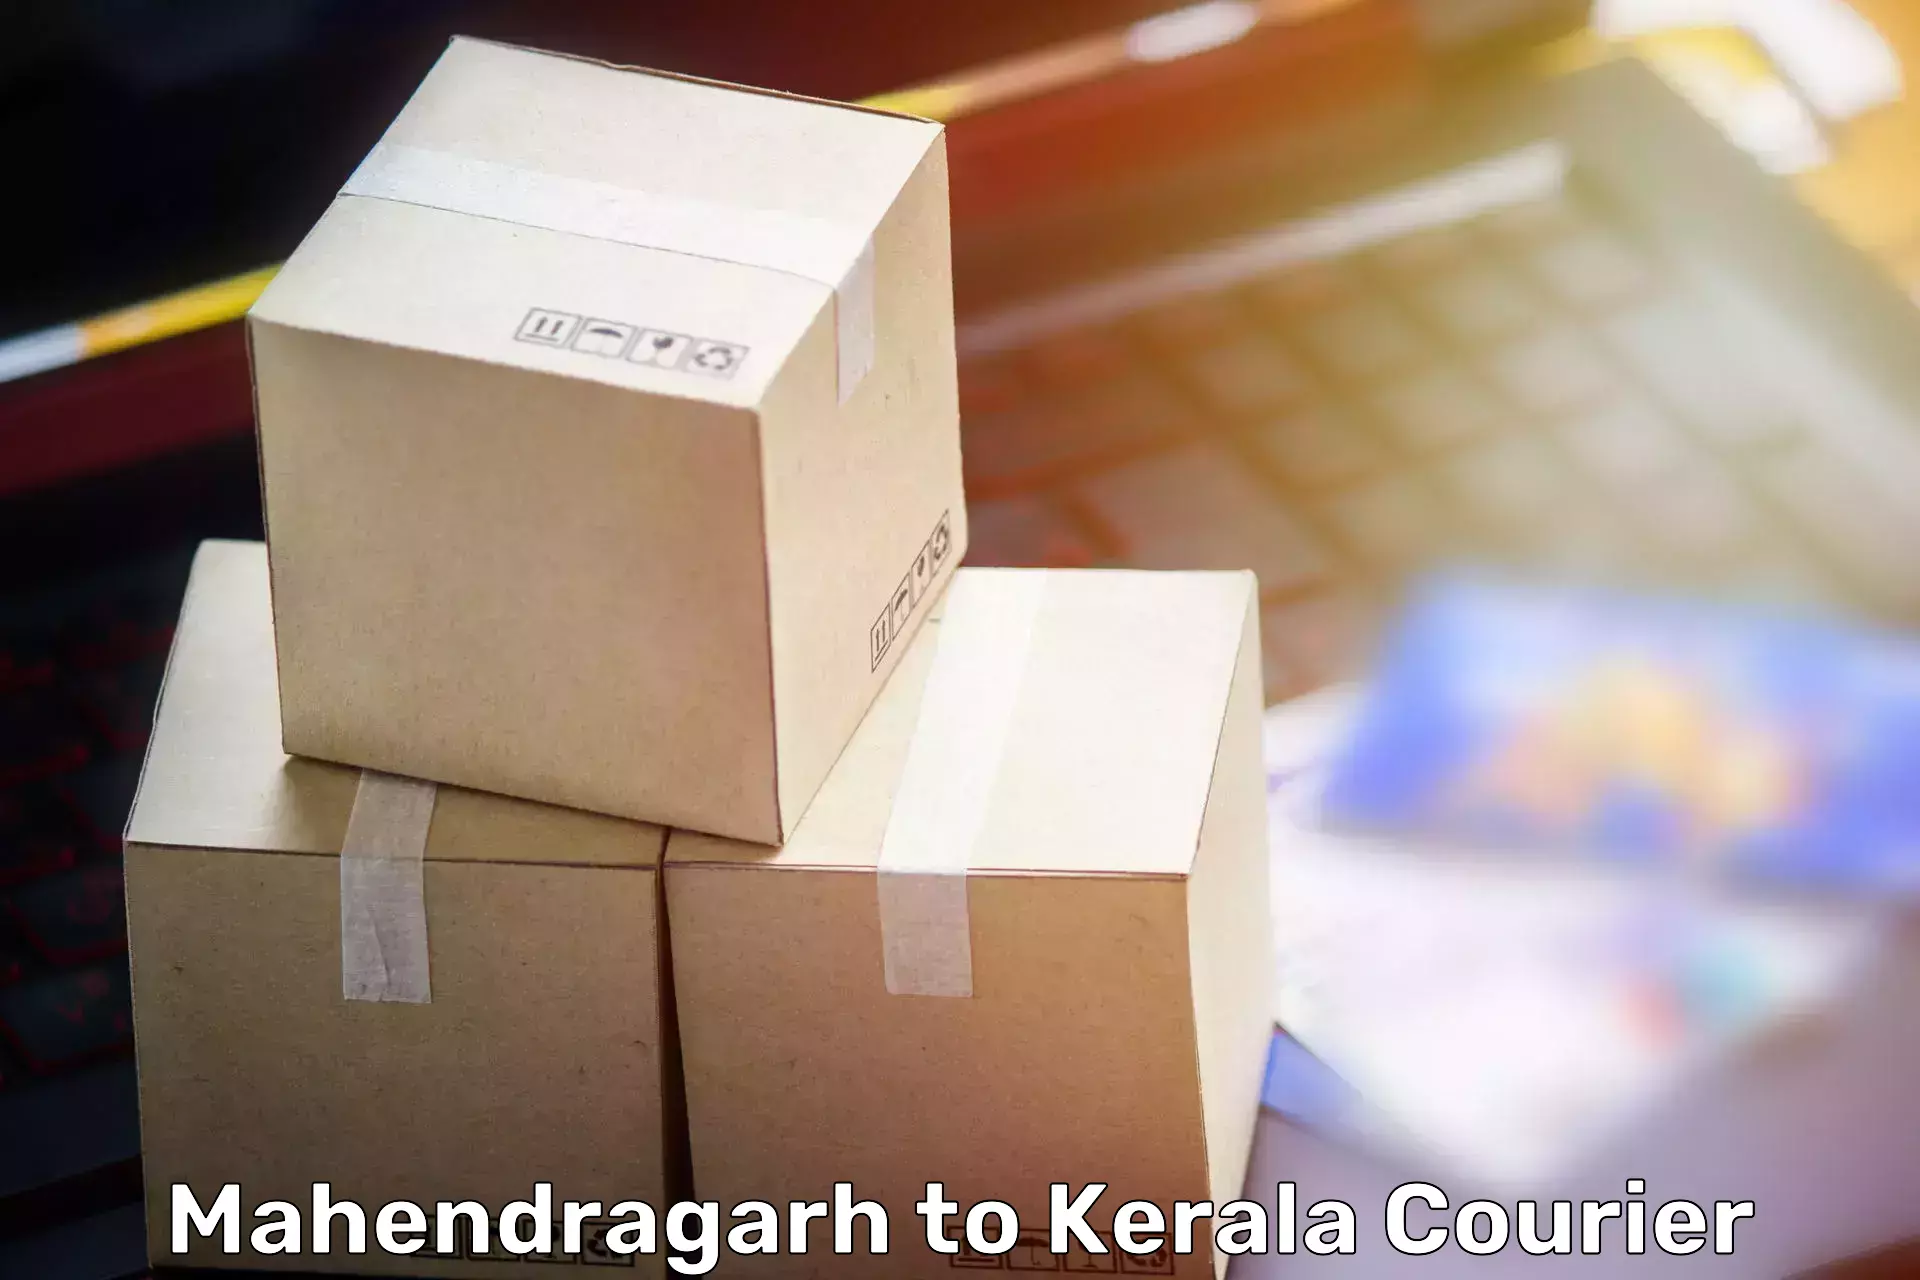 Efficient moving company Mahendragarh to Kanjirapally